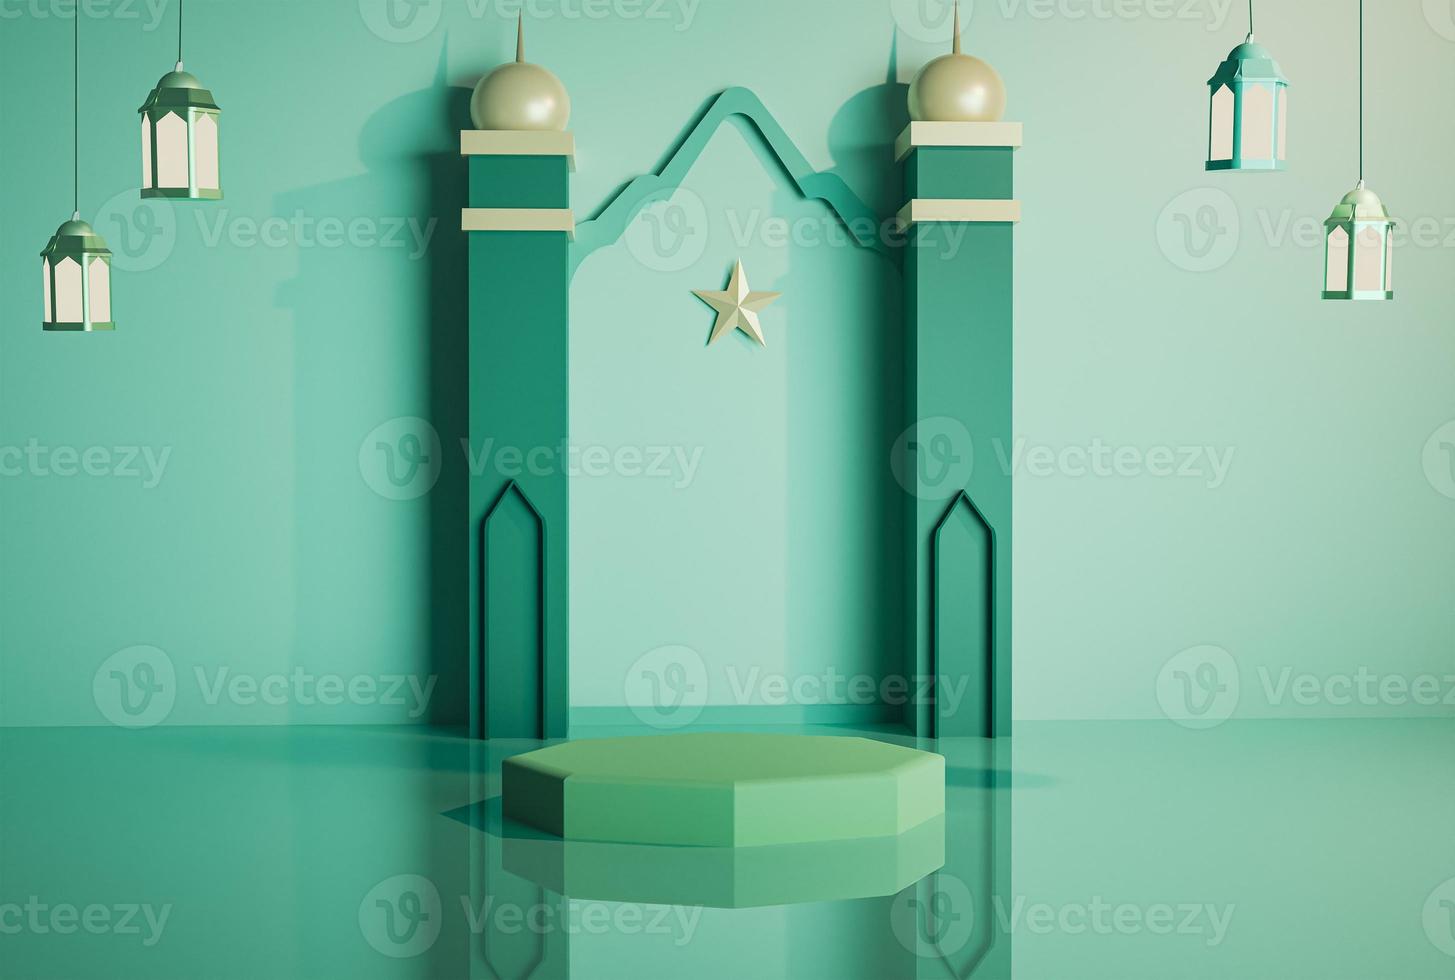 3d moderne décoration islamique produit podium affichage stades de minaret vert avec lanterne suspendue fond doux et réflexion sur le sol image de rendu 3d photo